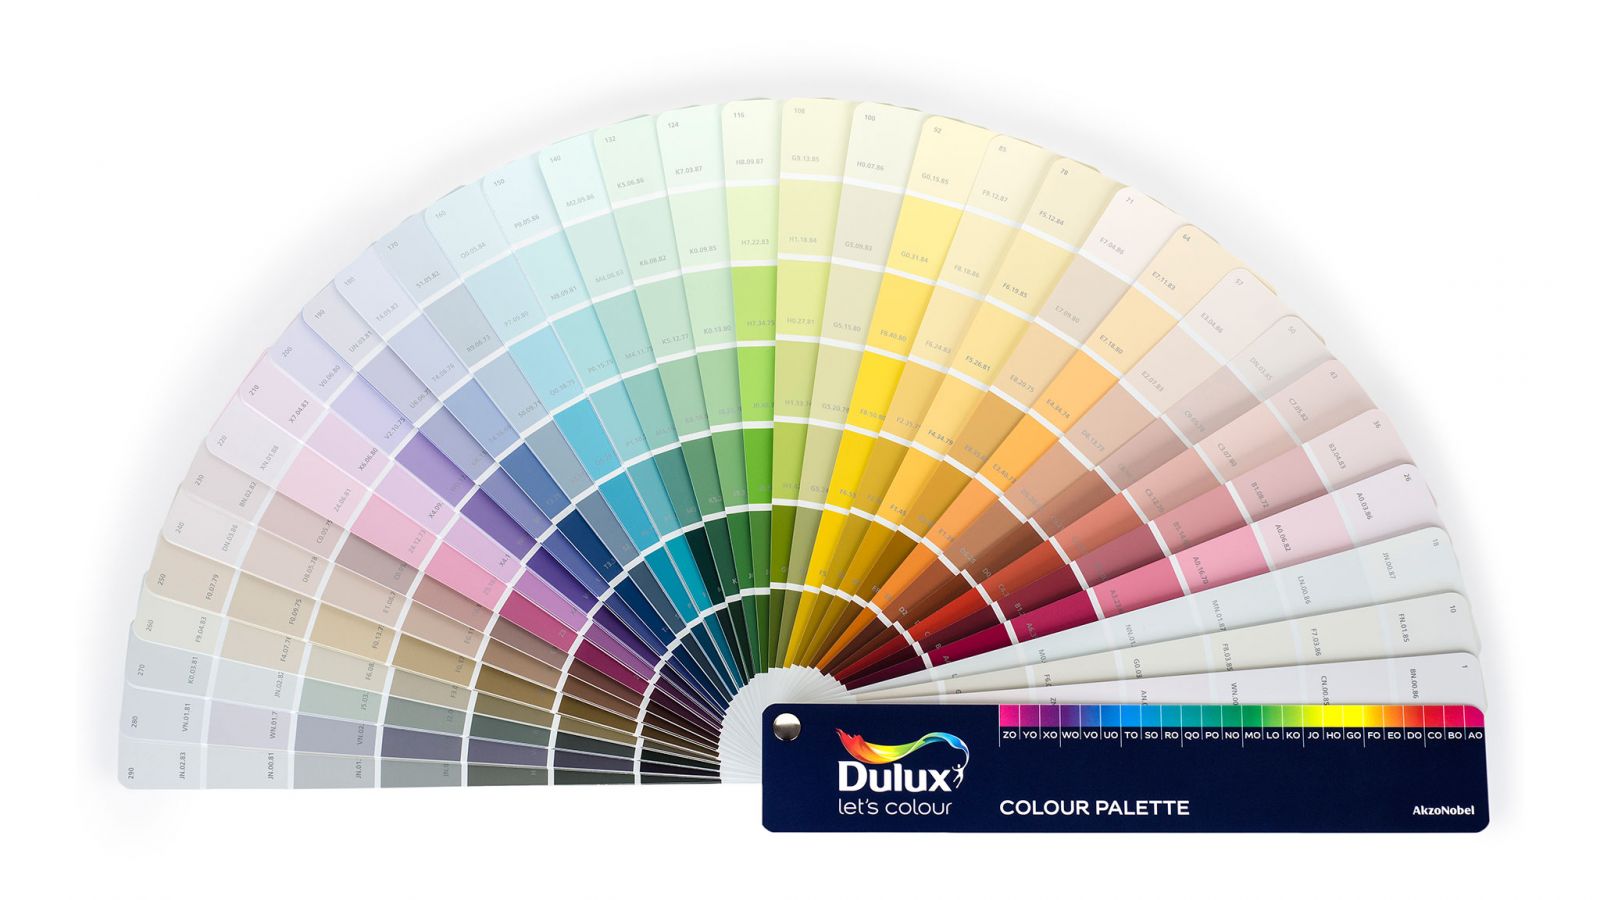 Bảng màu sơn trang trí là công cụ quan trọng giúp bạn lựa chọn được sắc màu ưng ý cho ngôi nhà của mình. Lưu trữ cẩn thận bảng màu để bạn có thể dễ dàng tham khảo lại trong quá trình hoàn thiện ngôi nhà.